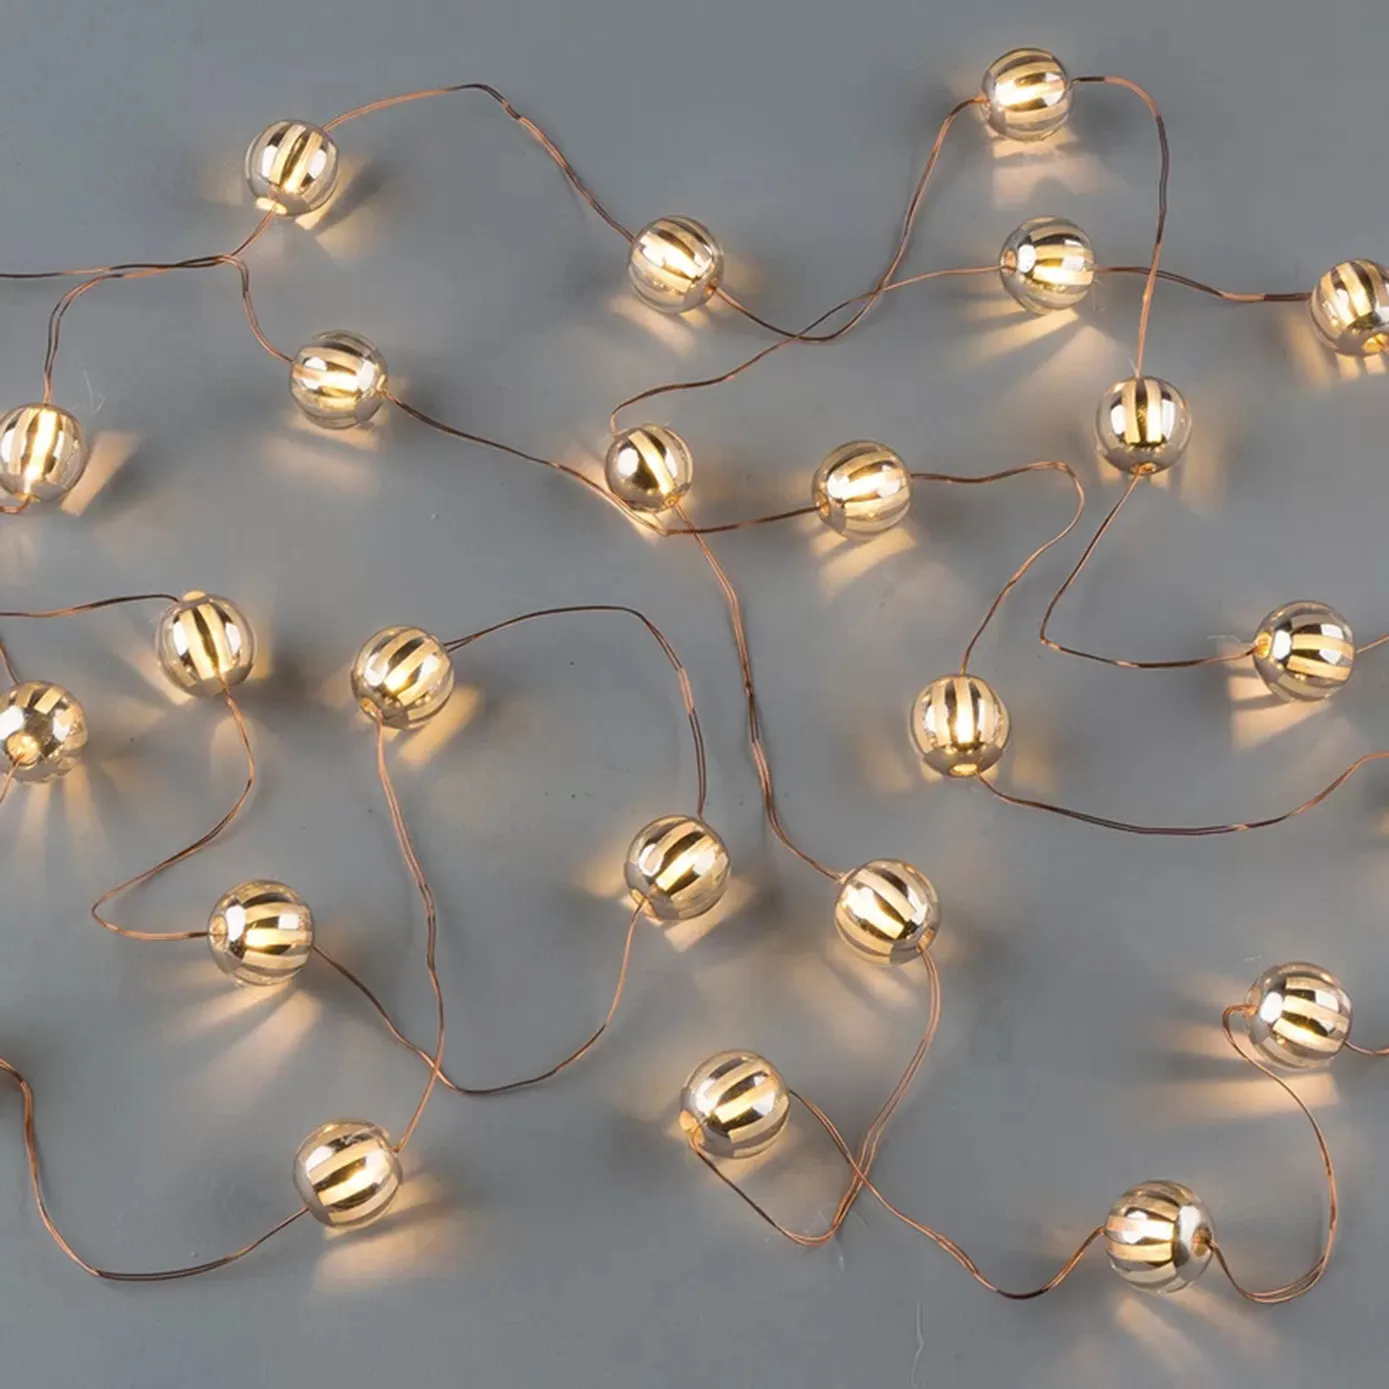 Popular venda quente LED Fada cobre fio Listrado prata Bead string luz cadeia luzes Holiday festival decorativo